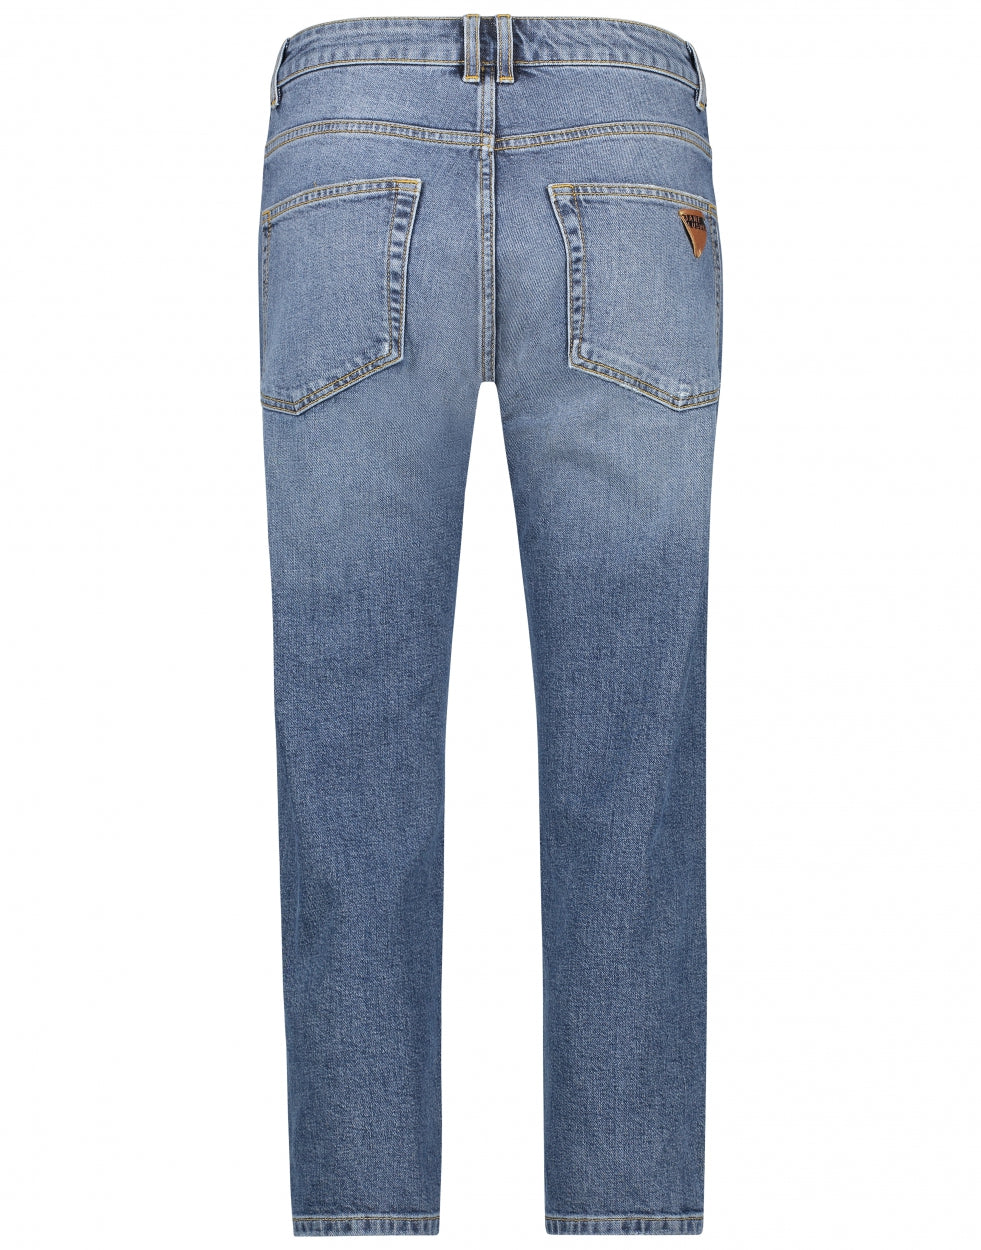 Hammaka jeans Indigo | Indigo